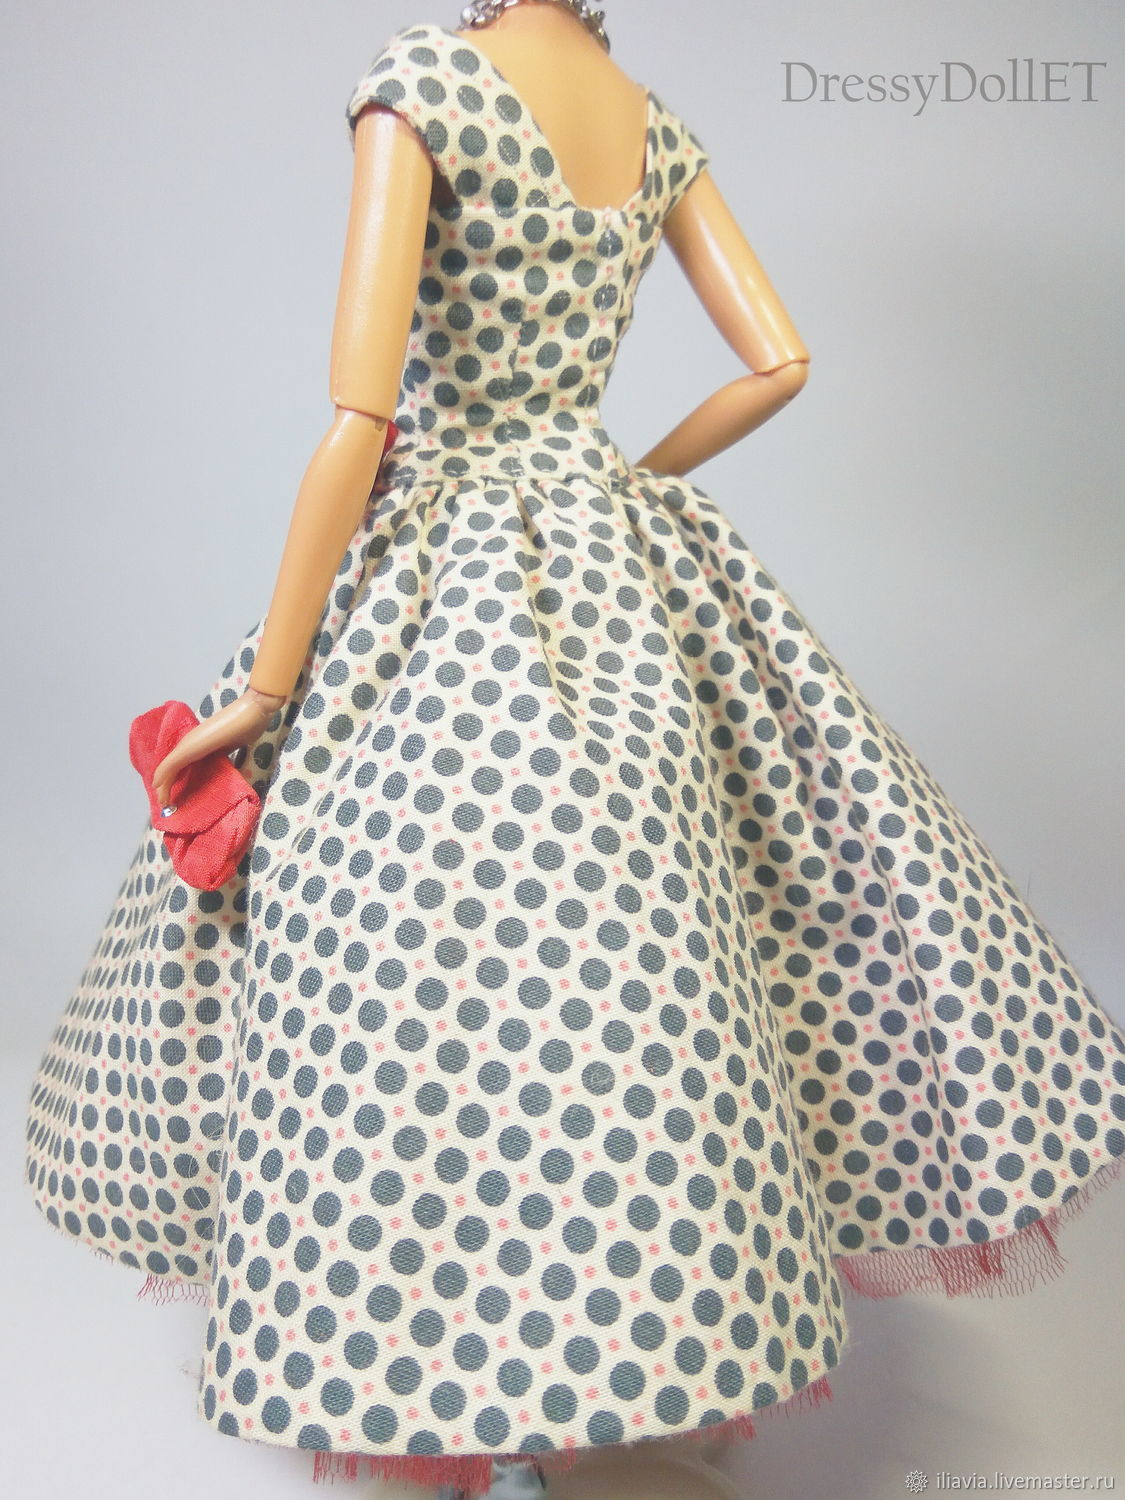 Кукла в платье горошек